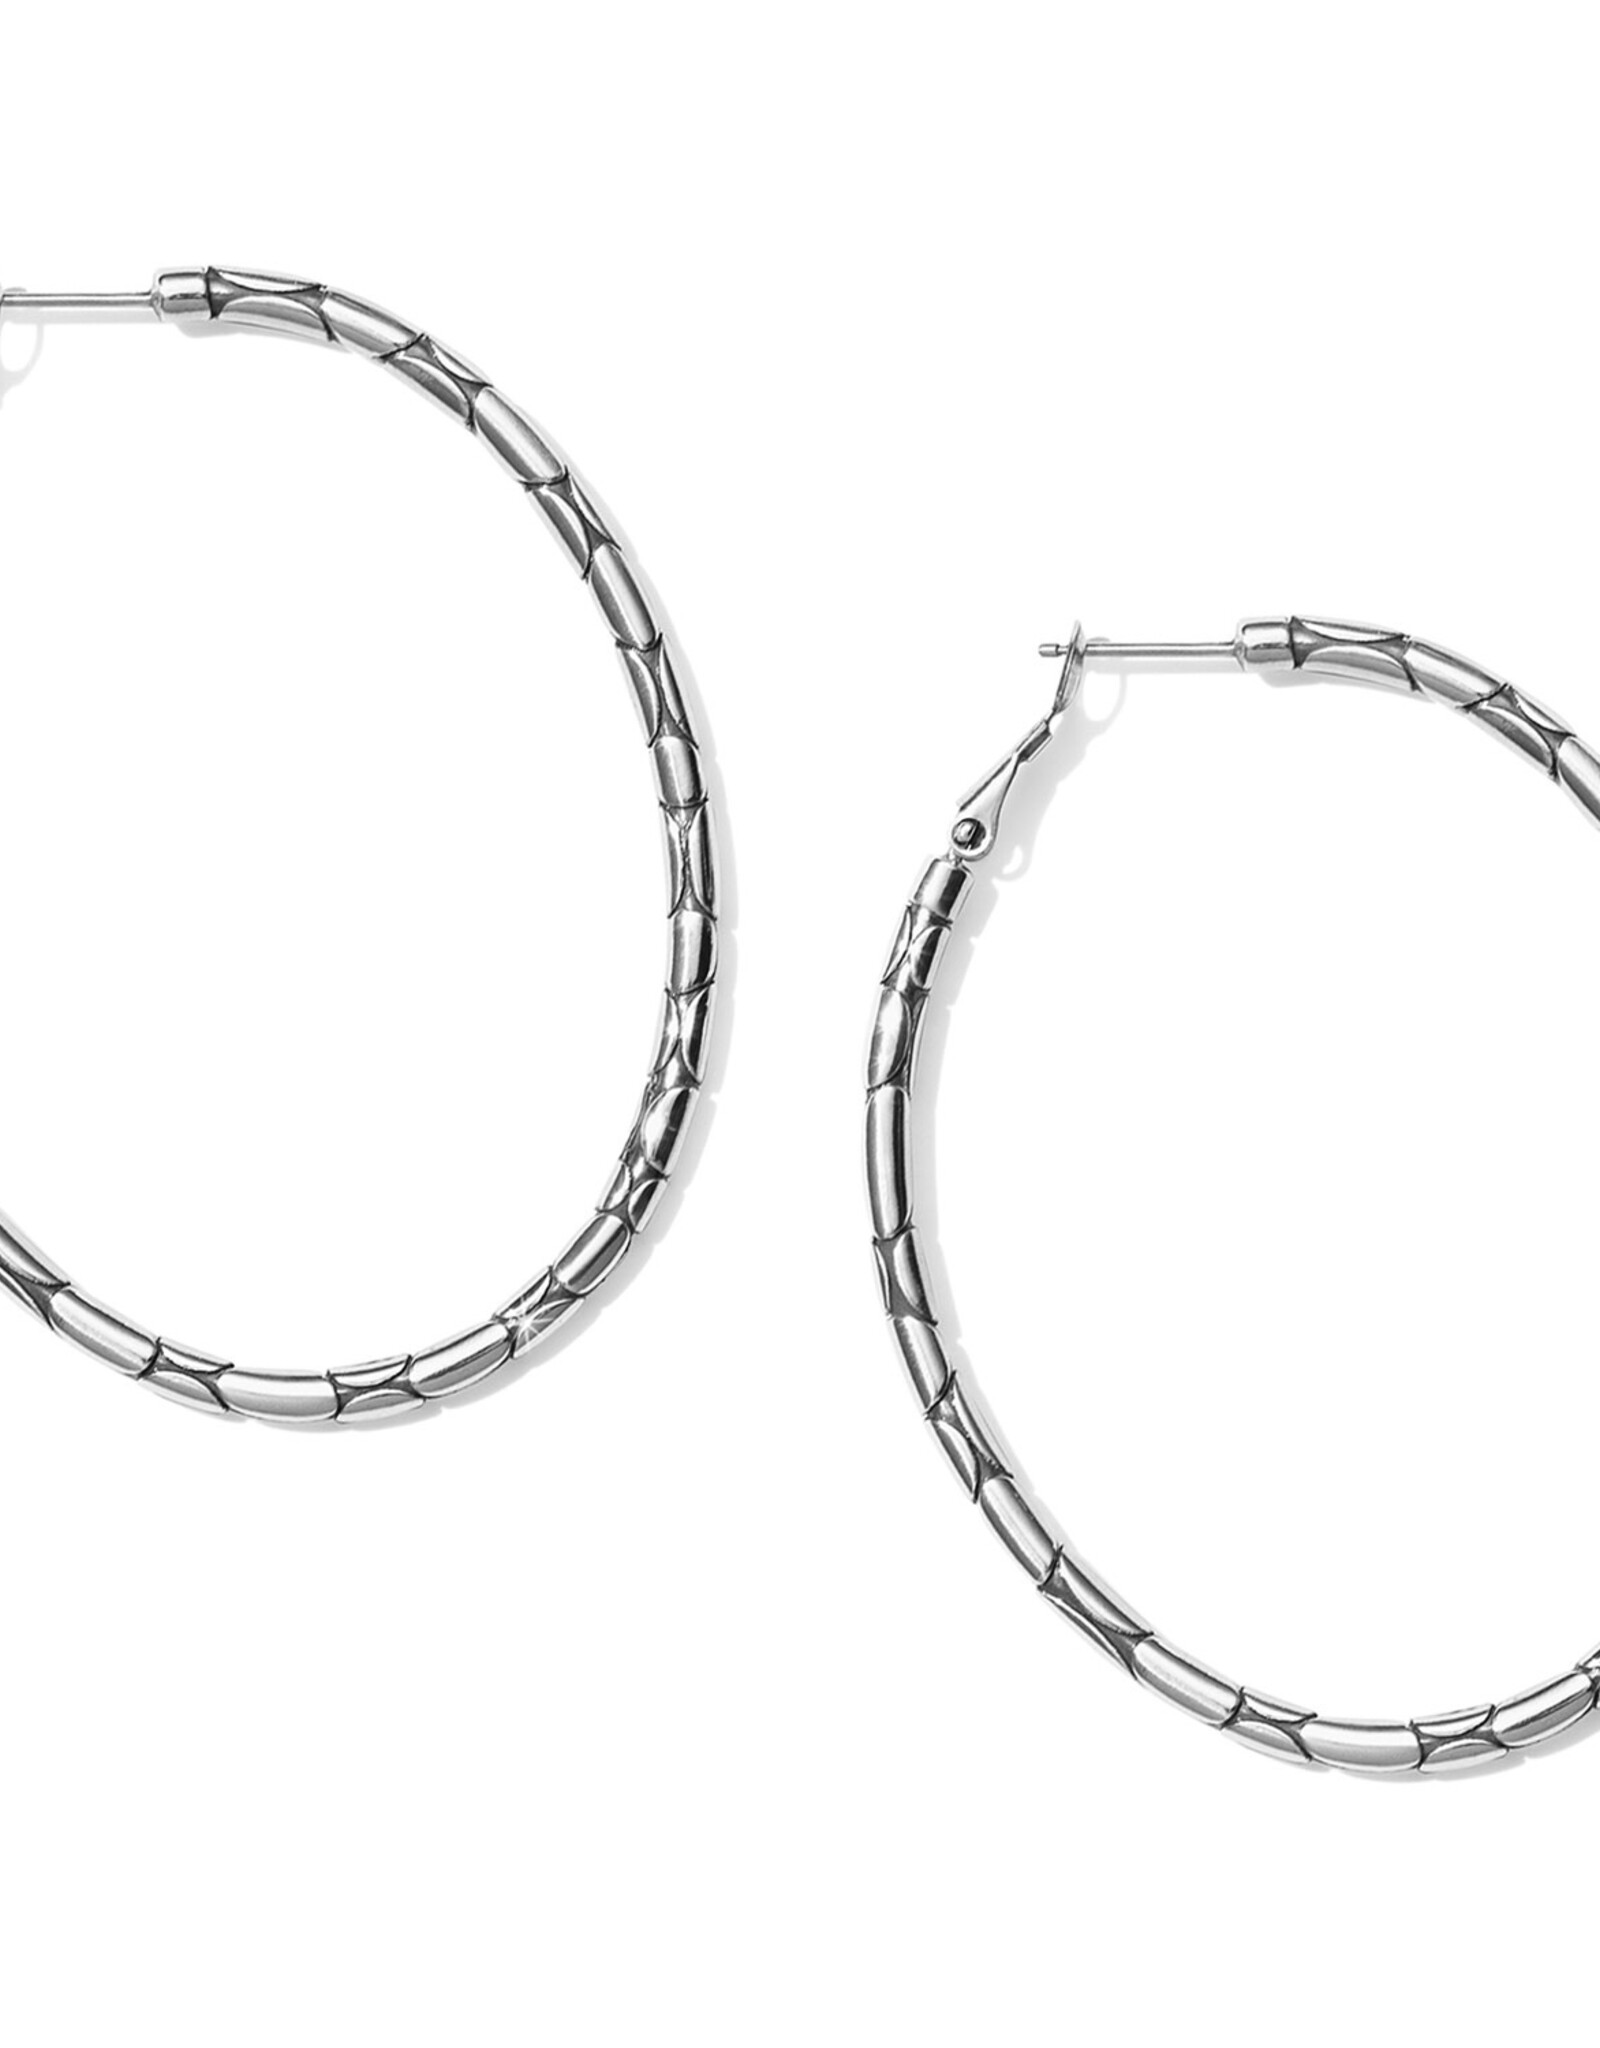 Brighton Pebble Large Oval Hoop Earrings